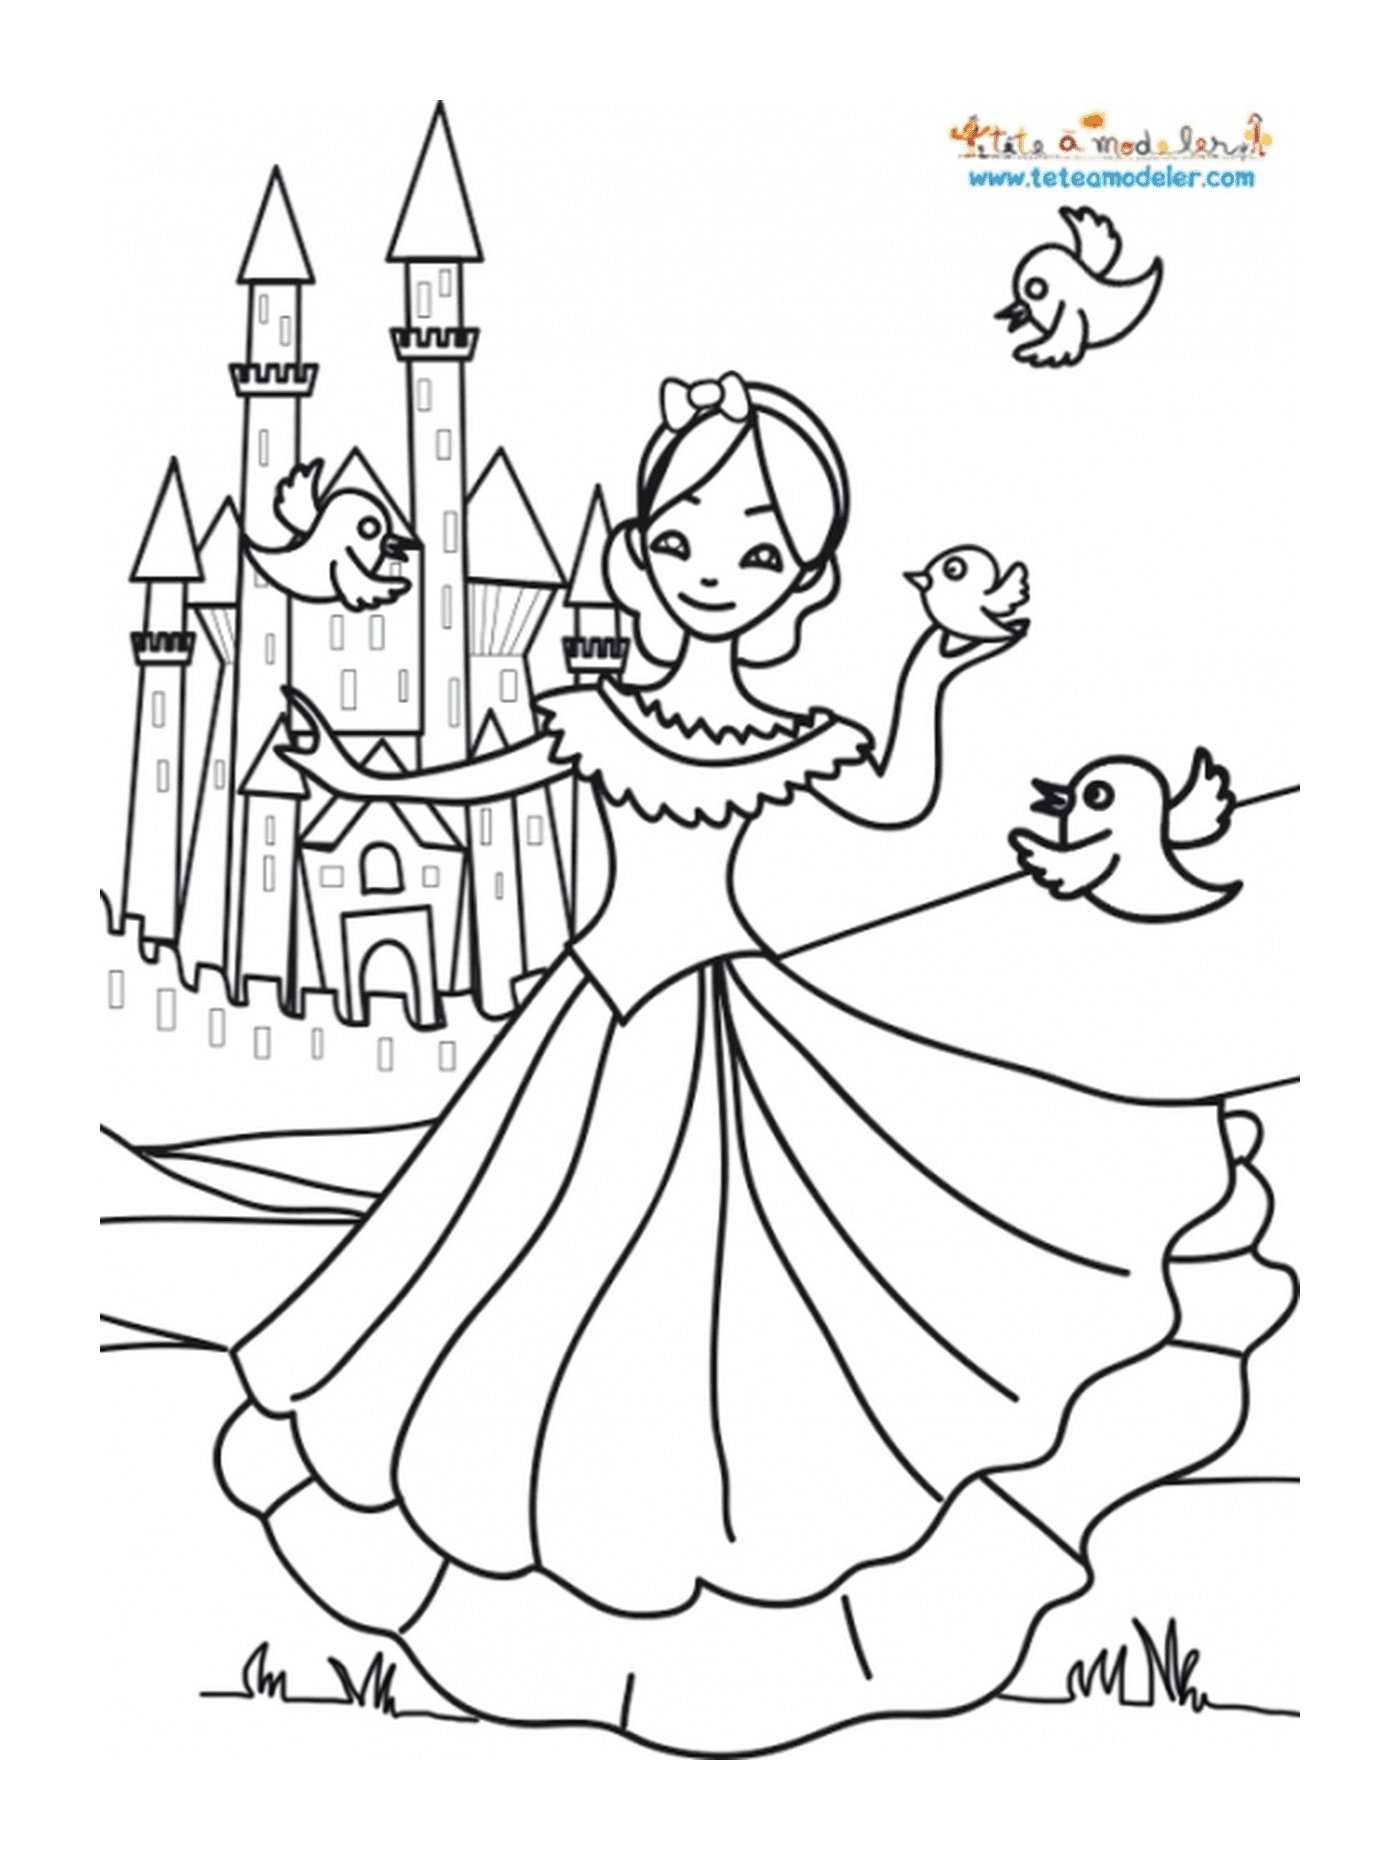  Una chica delante de un castillo, como una princesa 